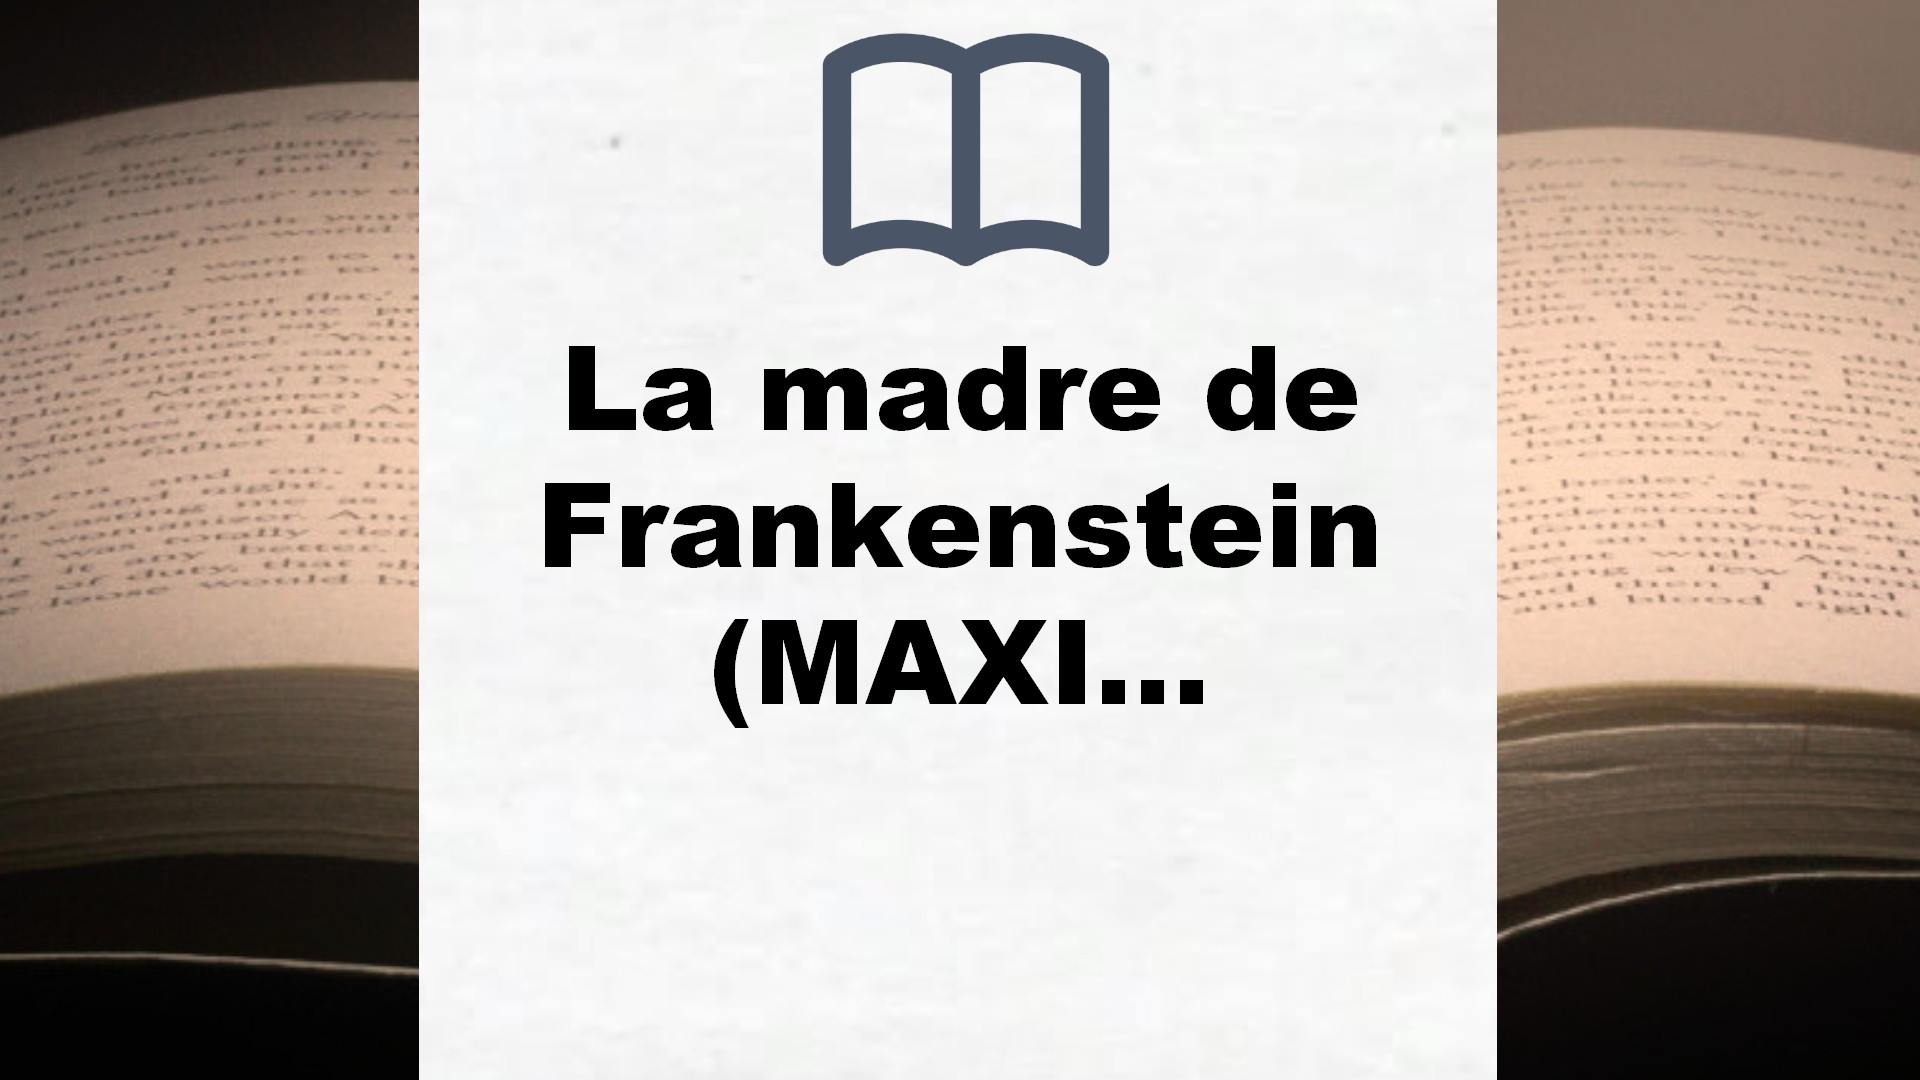 La madre de Frankenstein (MAXI) – Reseña del libro